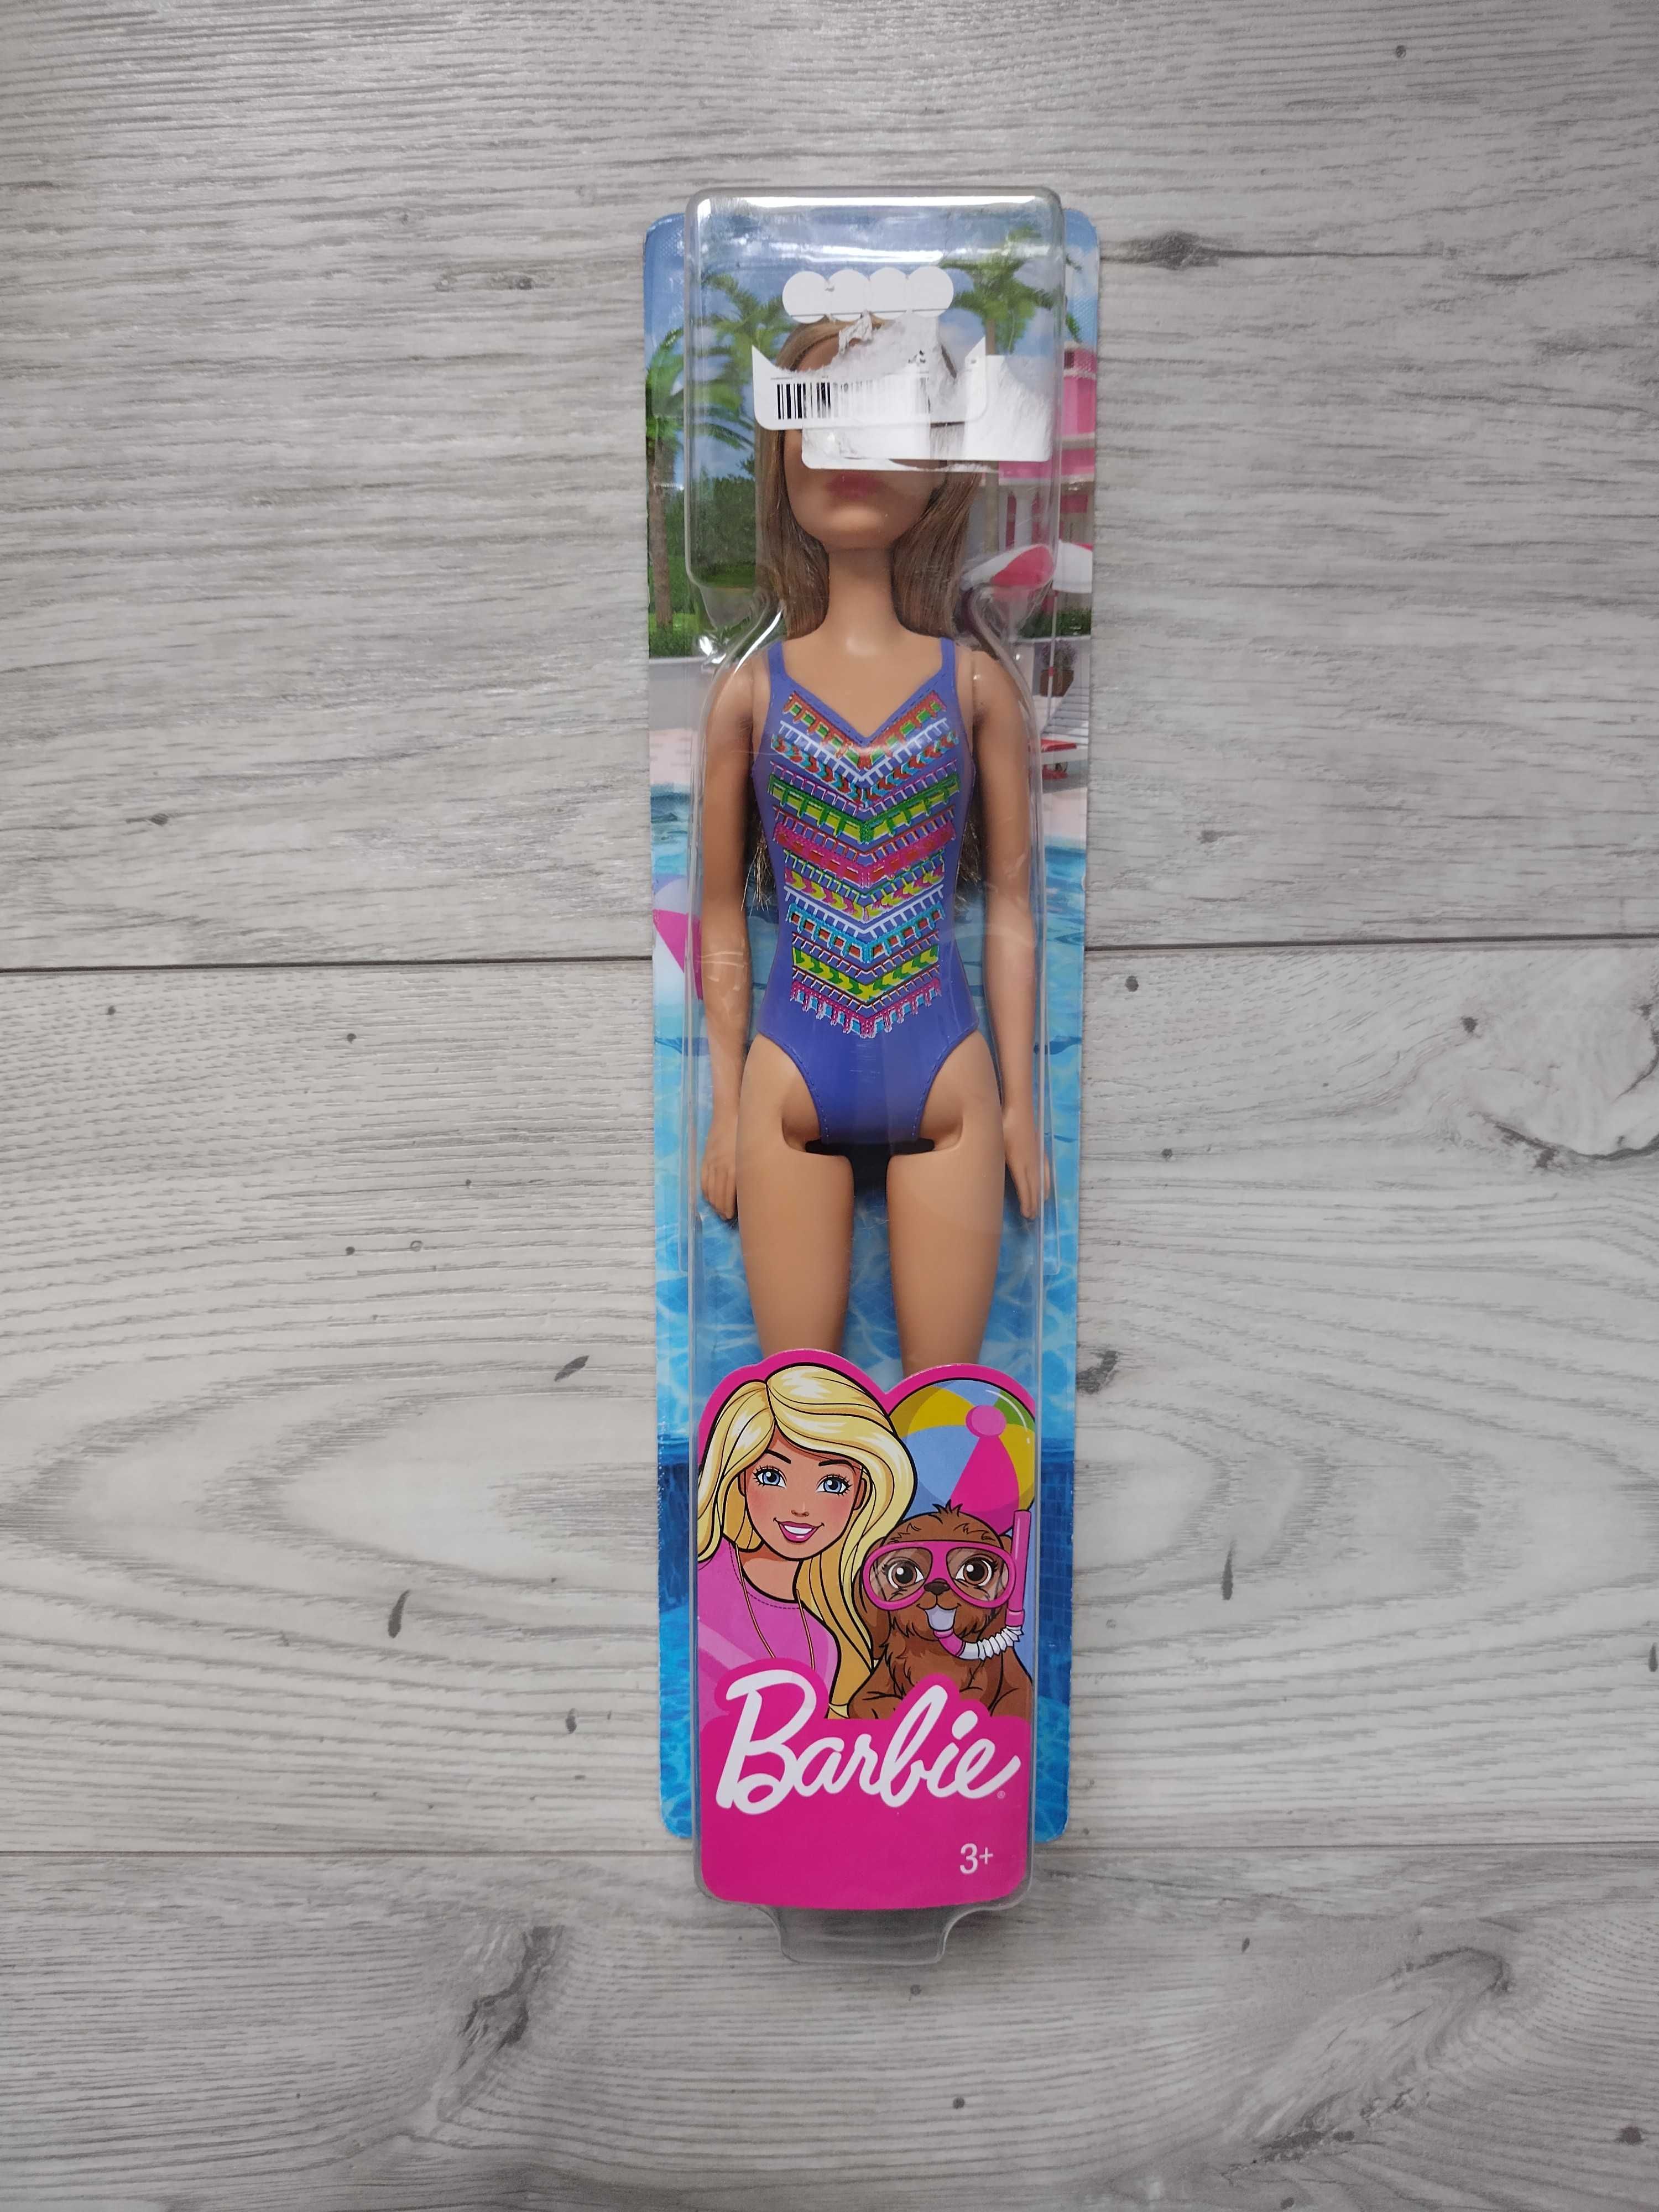 Lalka Barbie plażowa w niebieskim kostiumie w stroju kąpielowym